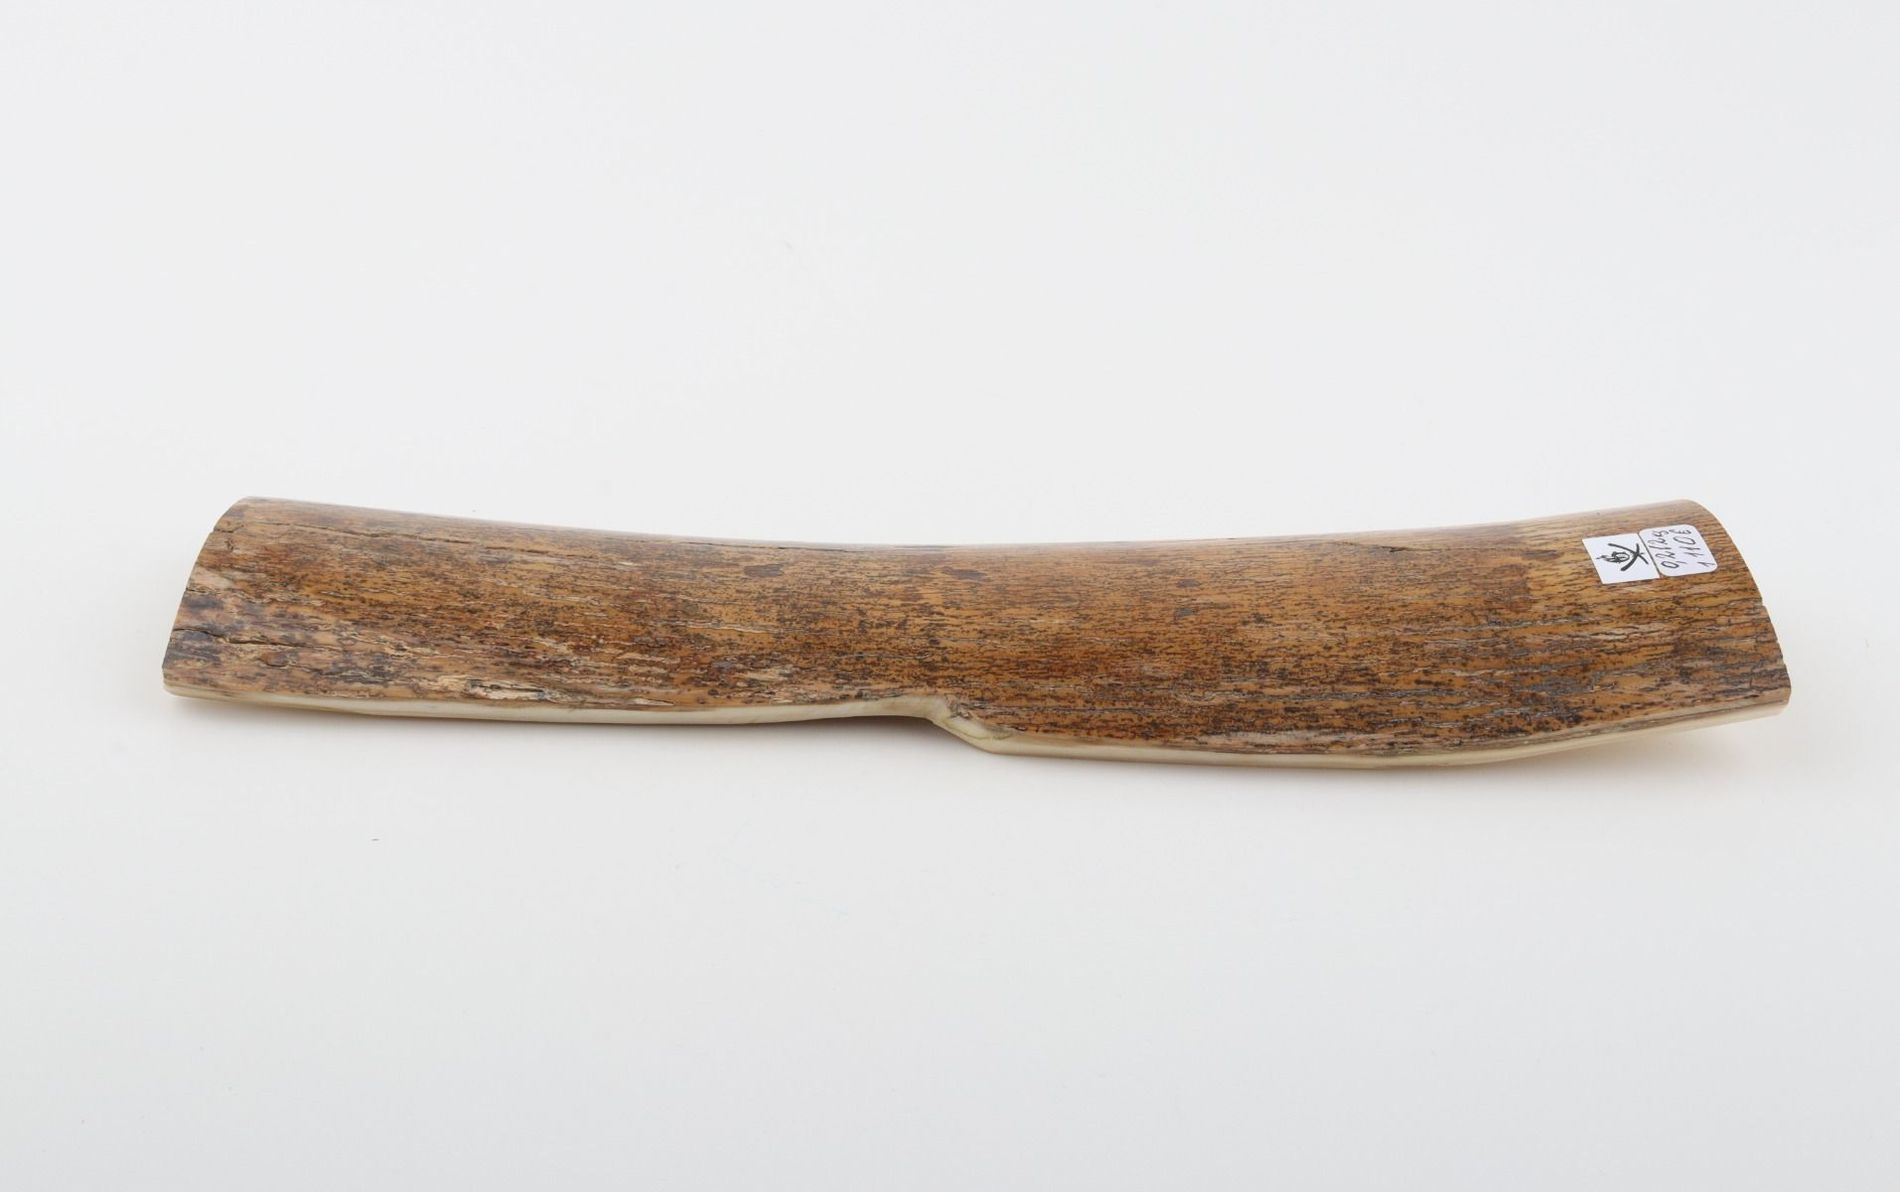 Beige-yellow mammoth bark